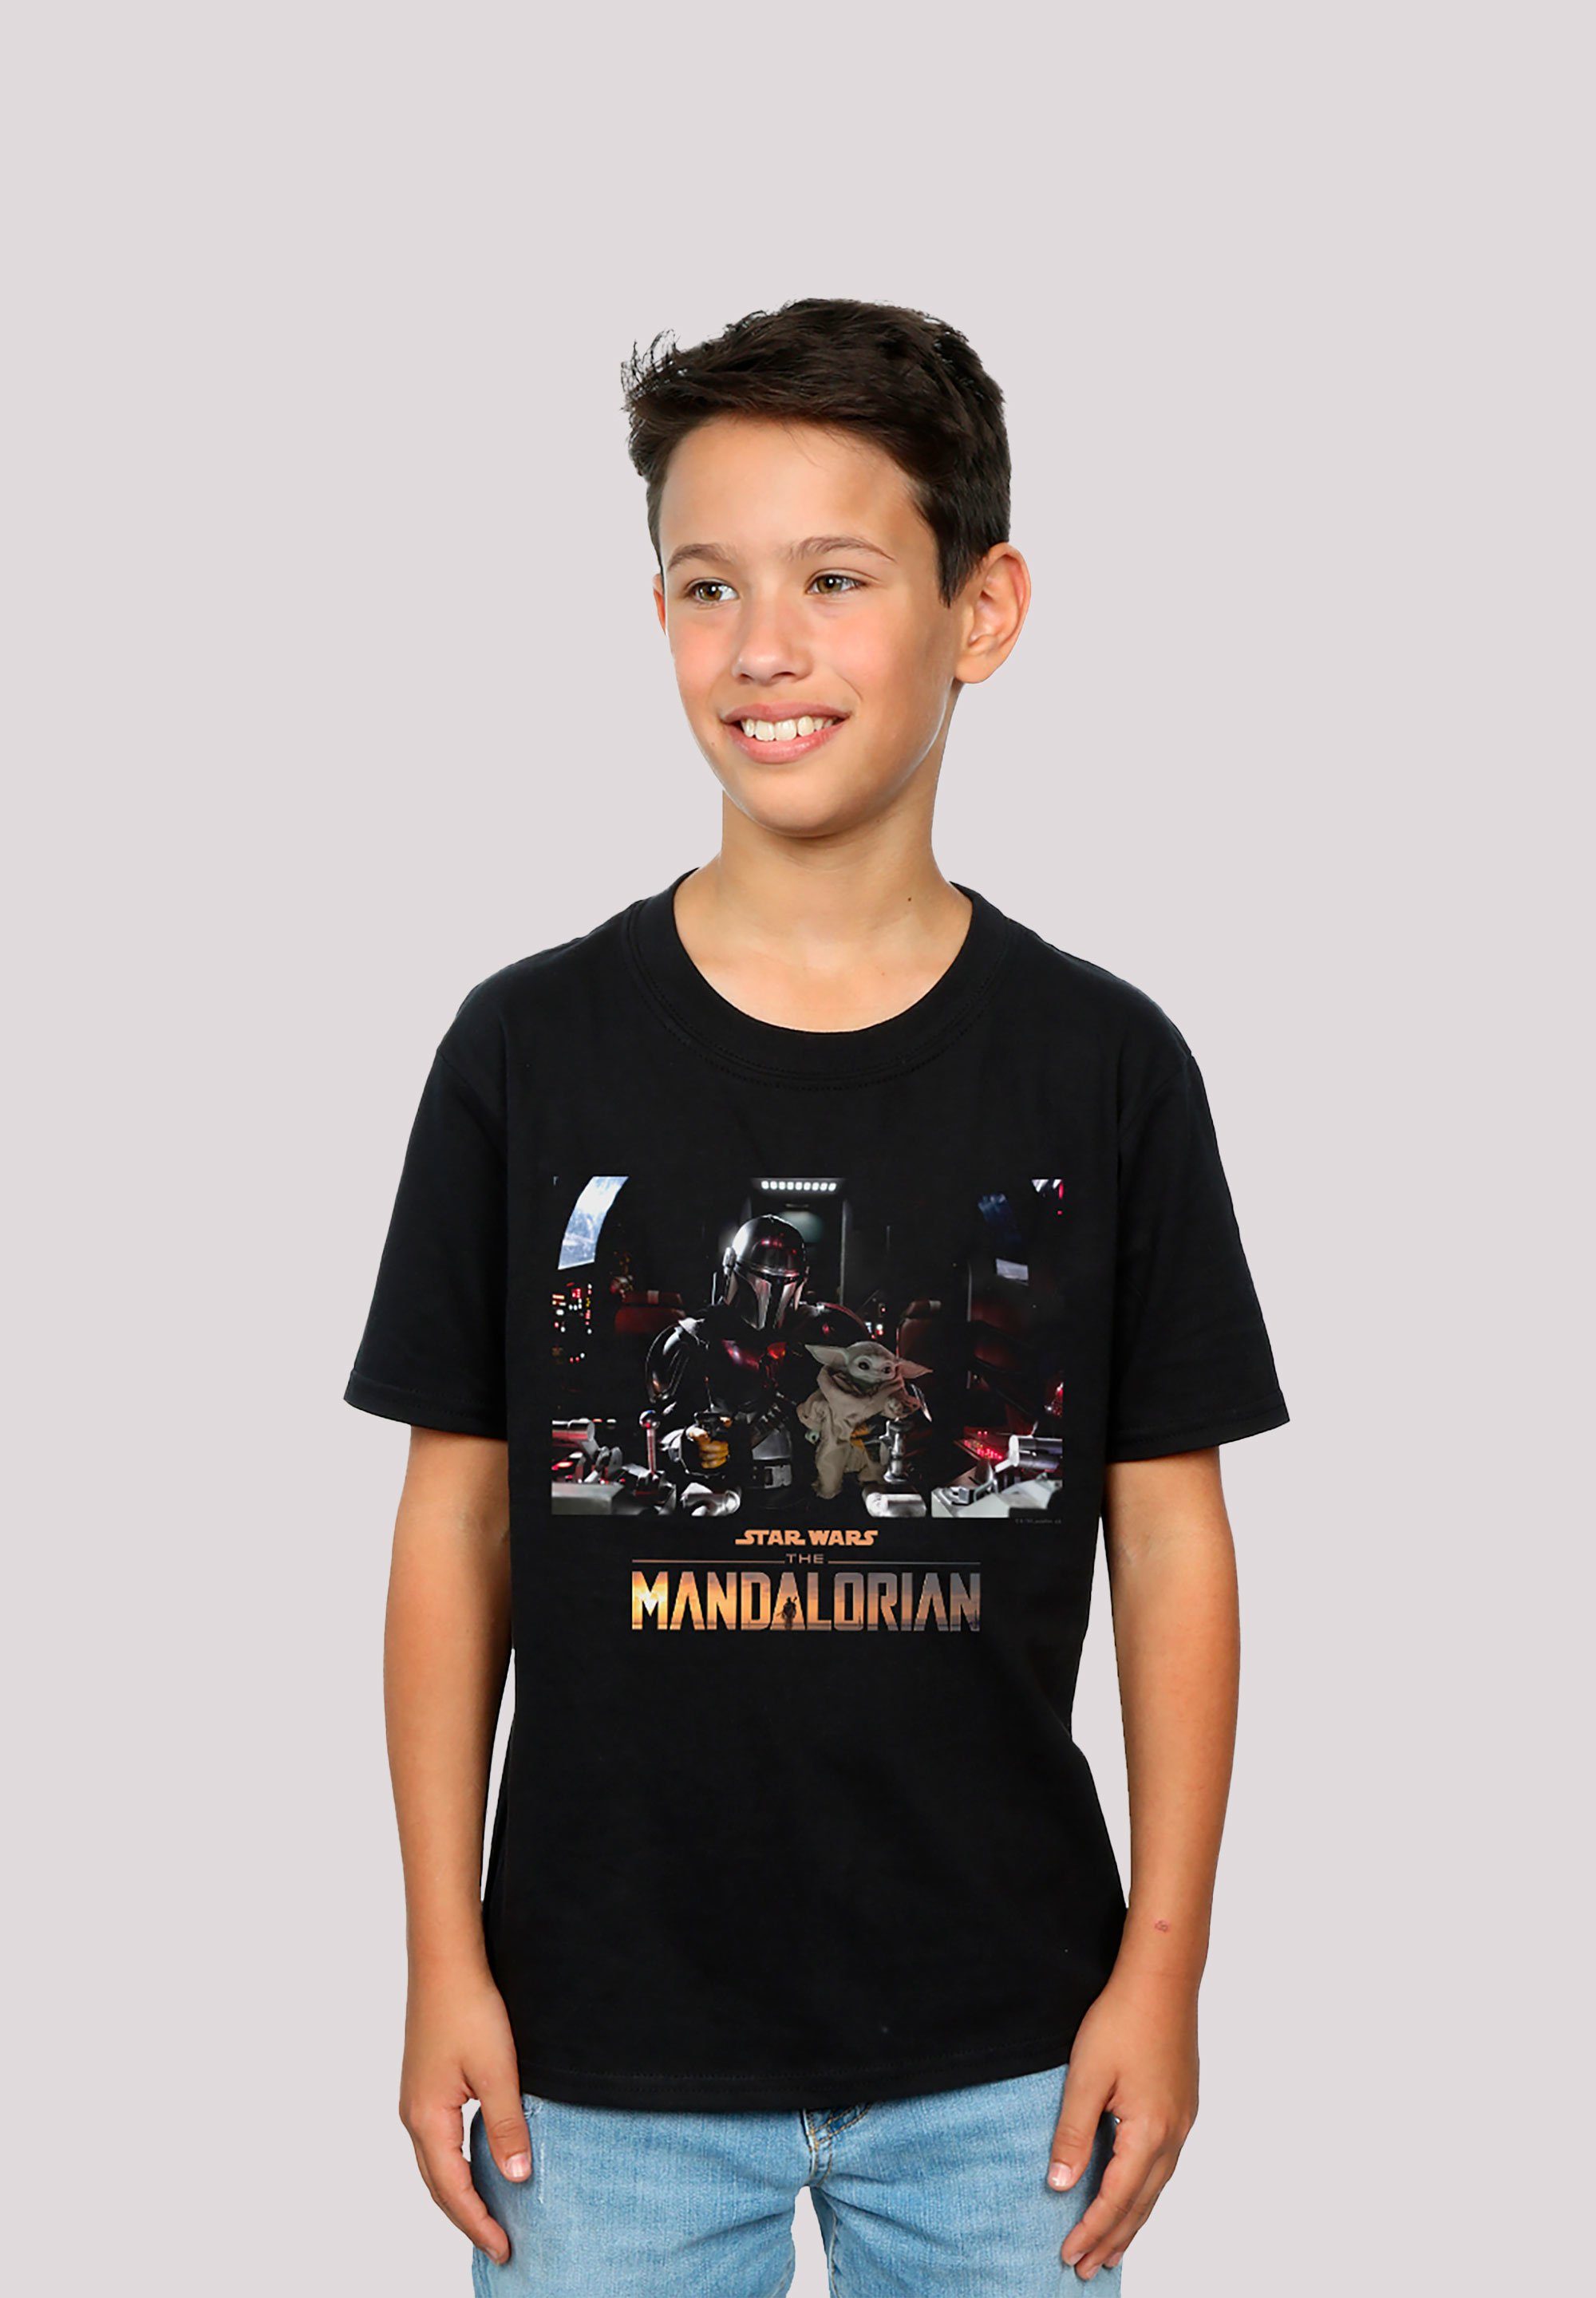 The Premium Wars Print F4NT4STIC - Mandalorian Krieg Star T-Shirt Sterne der